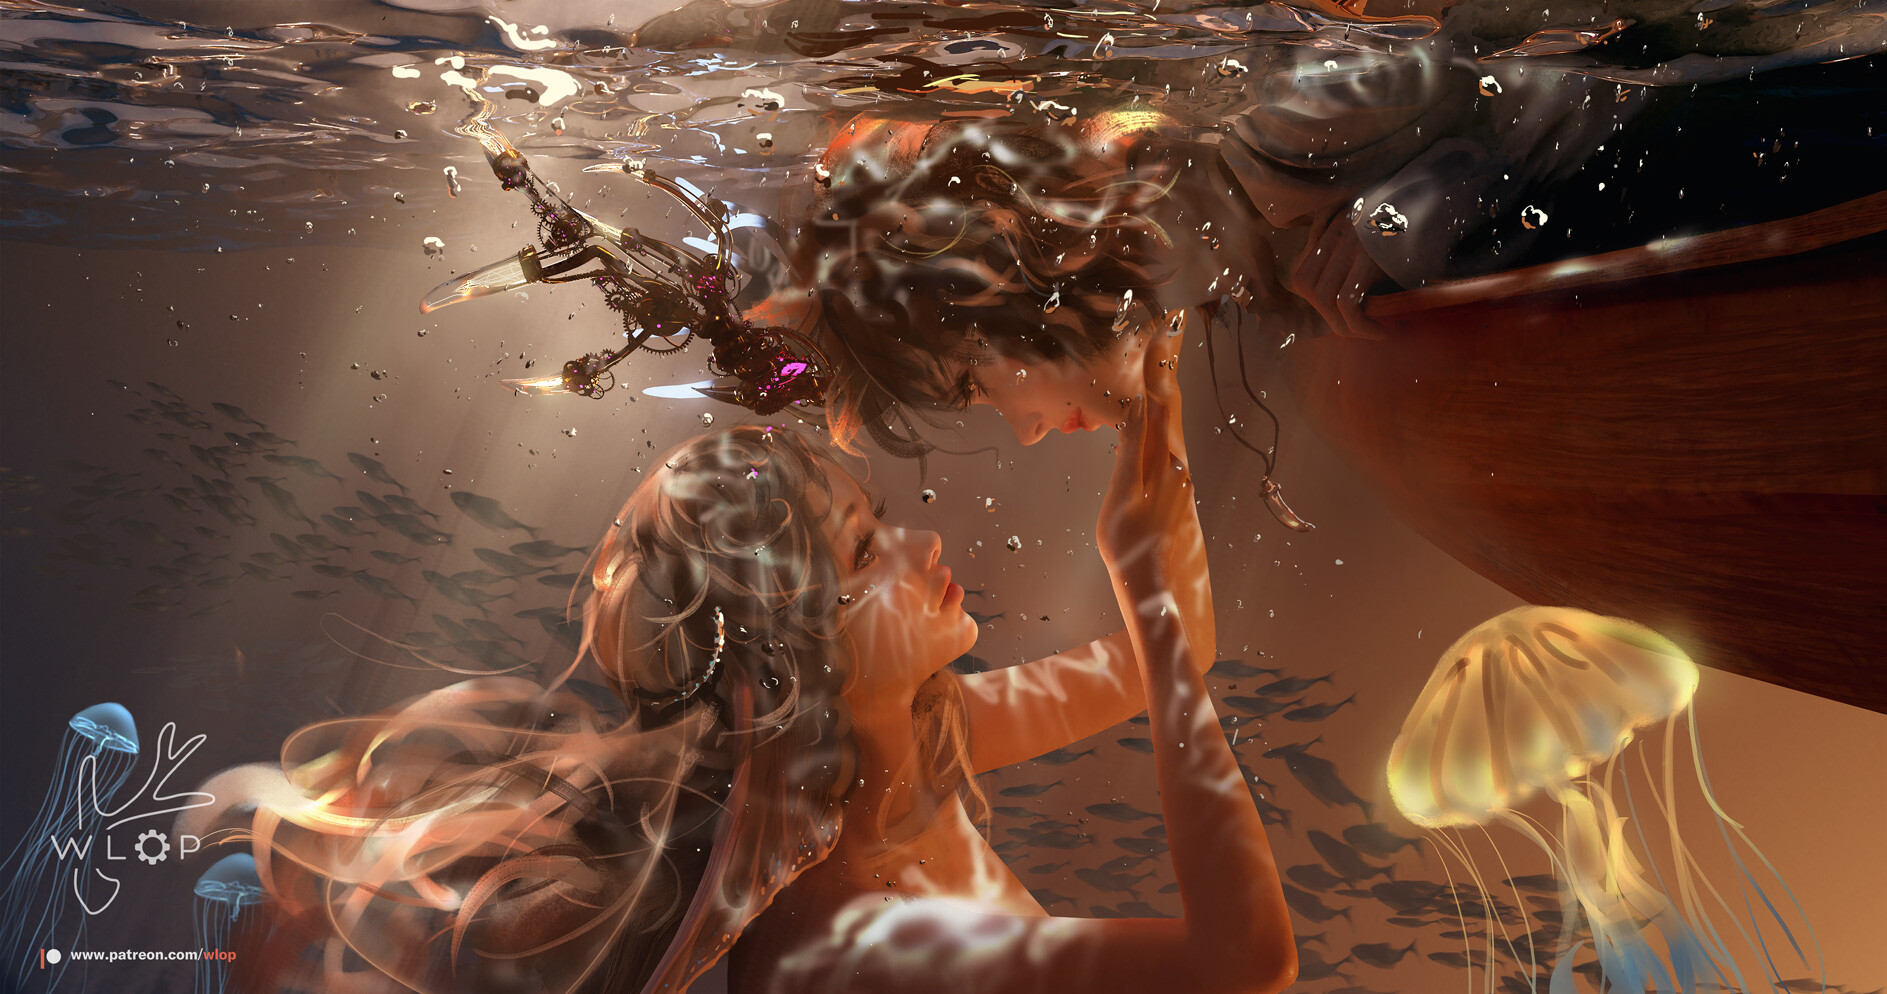 General 1887x994 WLOP women two women digital art ArtStation fantasy art fantasy girl underwater artwork